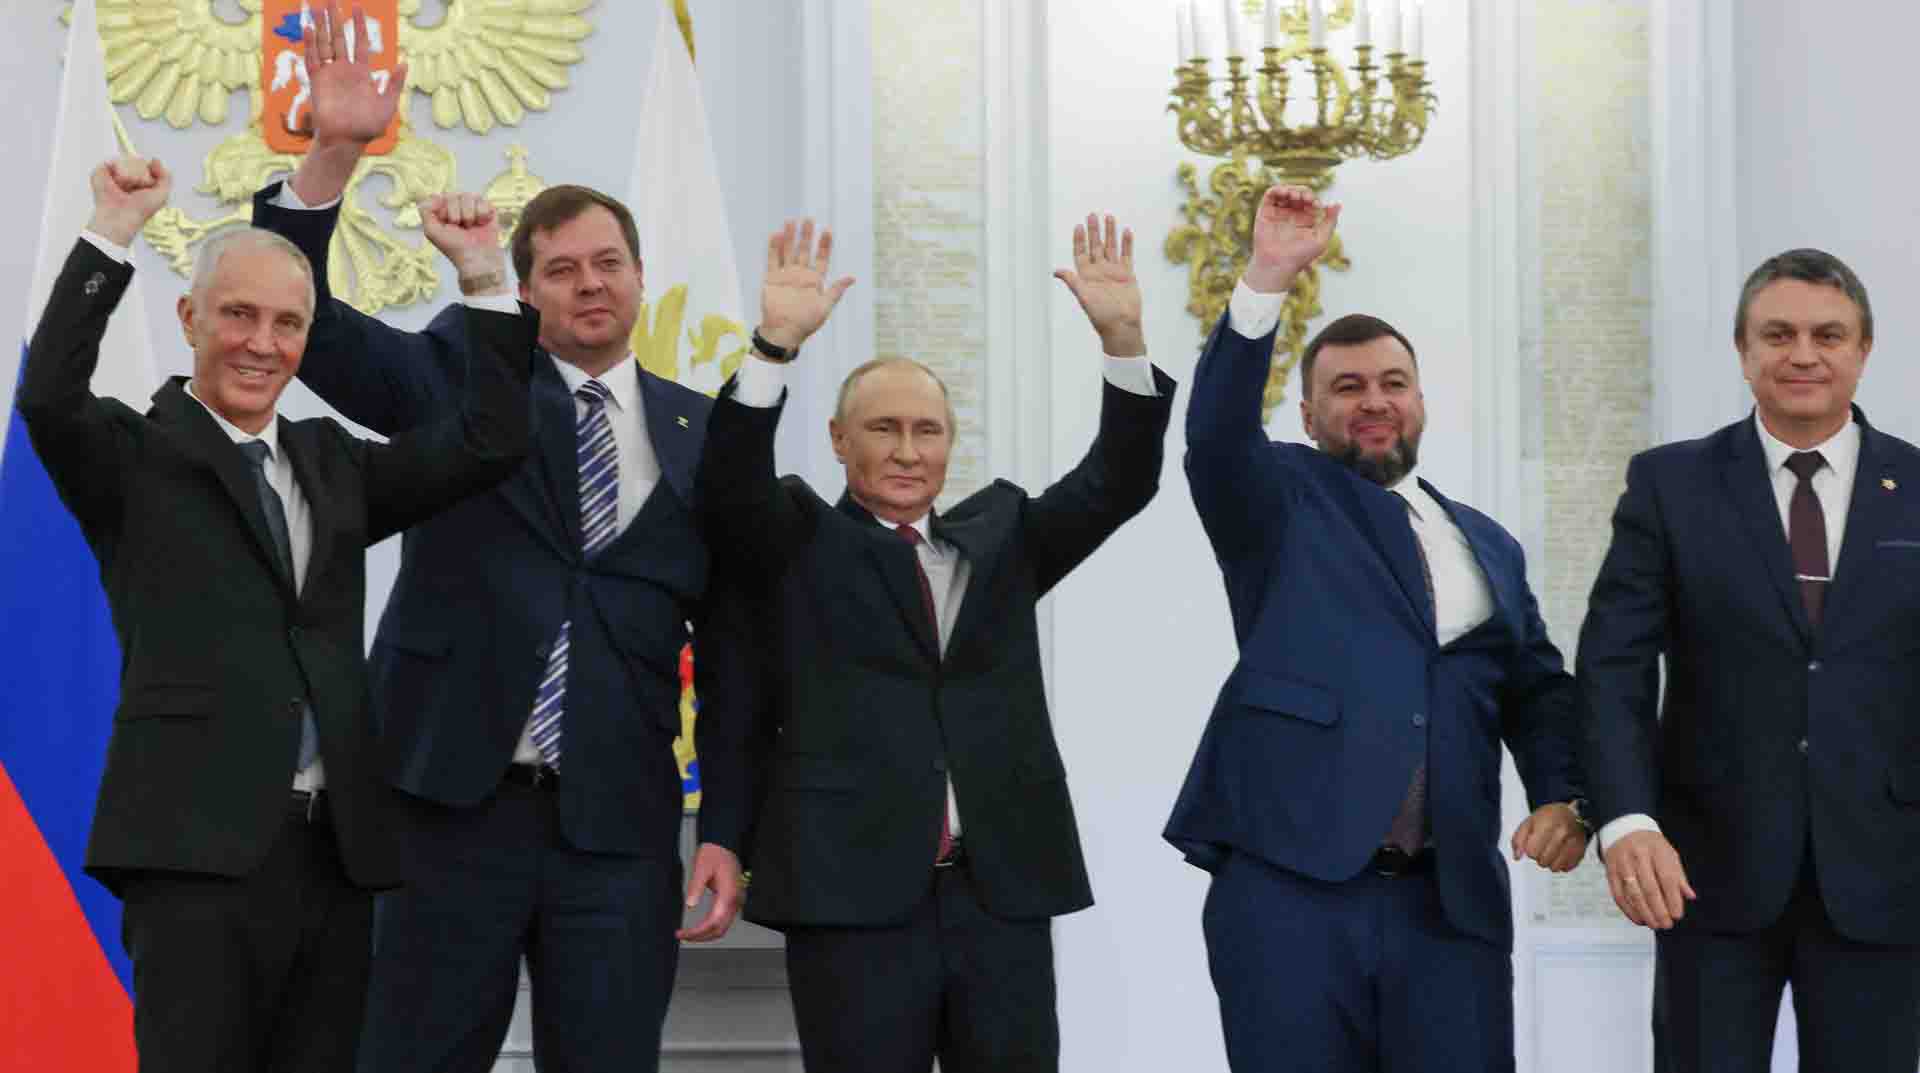 El presidente ruso Vladimir Putin (c) celebra con el jefe de la República Popular de Donetsk, Denis Pushilin, (2do-der), el líder de la República Popular de Lugansk, Leonid Pasechnik, (d), el jefe de la Región de Zaporiyia, Yevhen Balitsky (2º a la izquierda), y el dirigente de la región de Jersón, Vladimir Saldo (izq), tras firmar los tratados sobre la adhesión de estos territorios a Rusia en Moscú. Foto: EFE